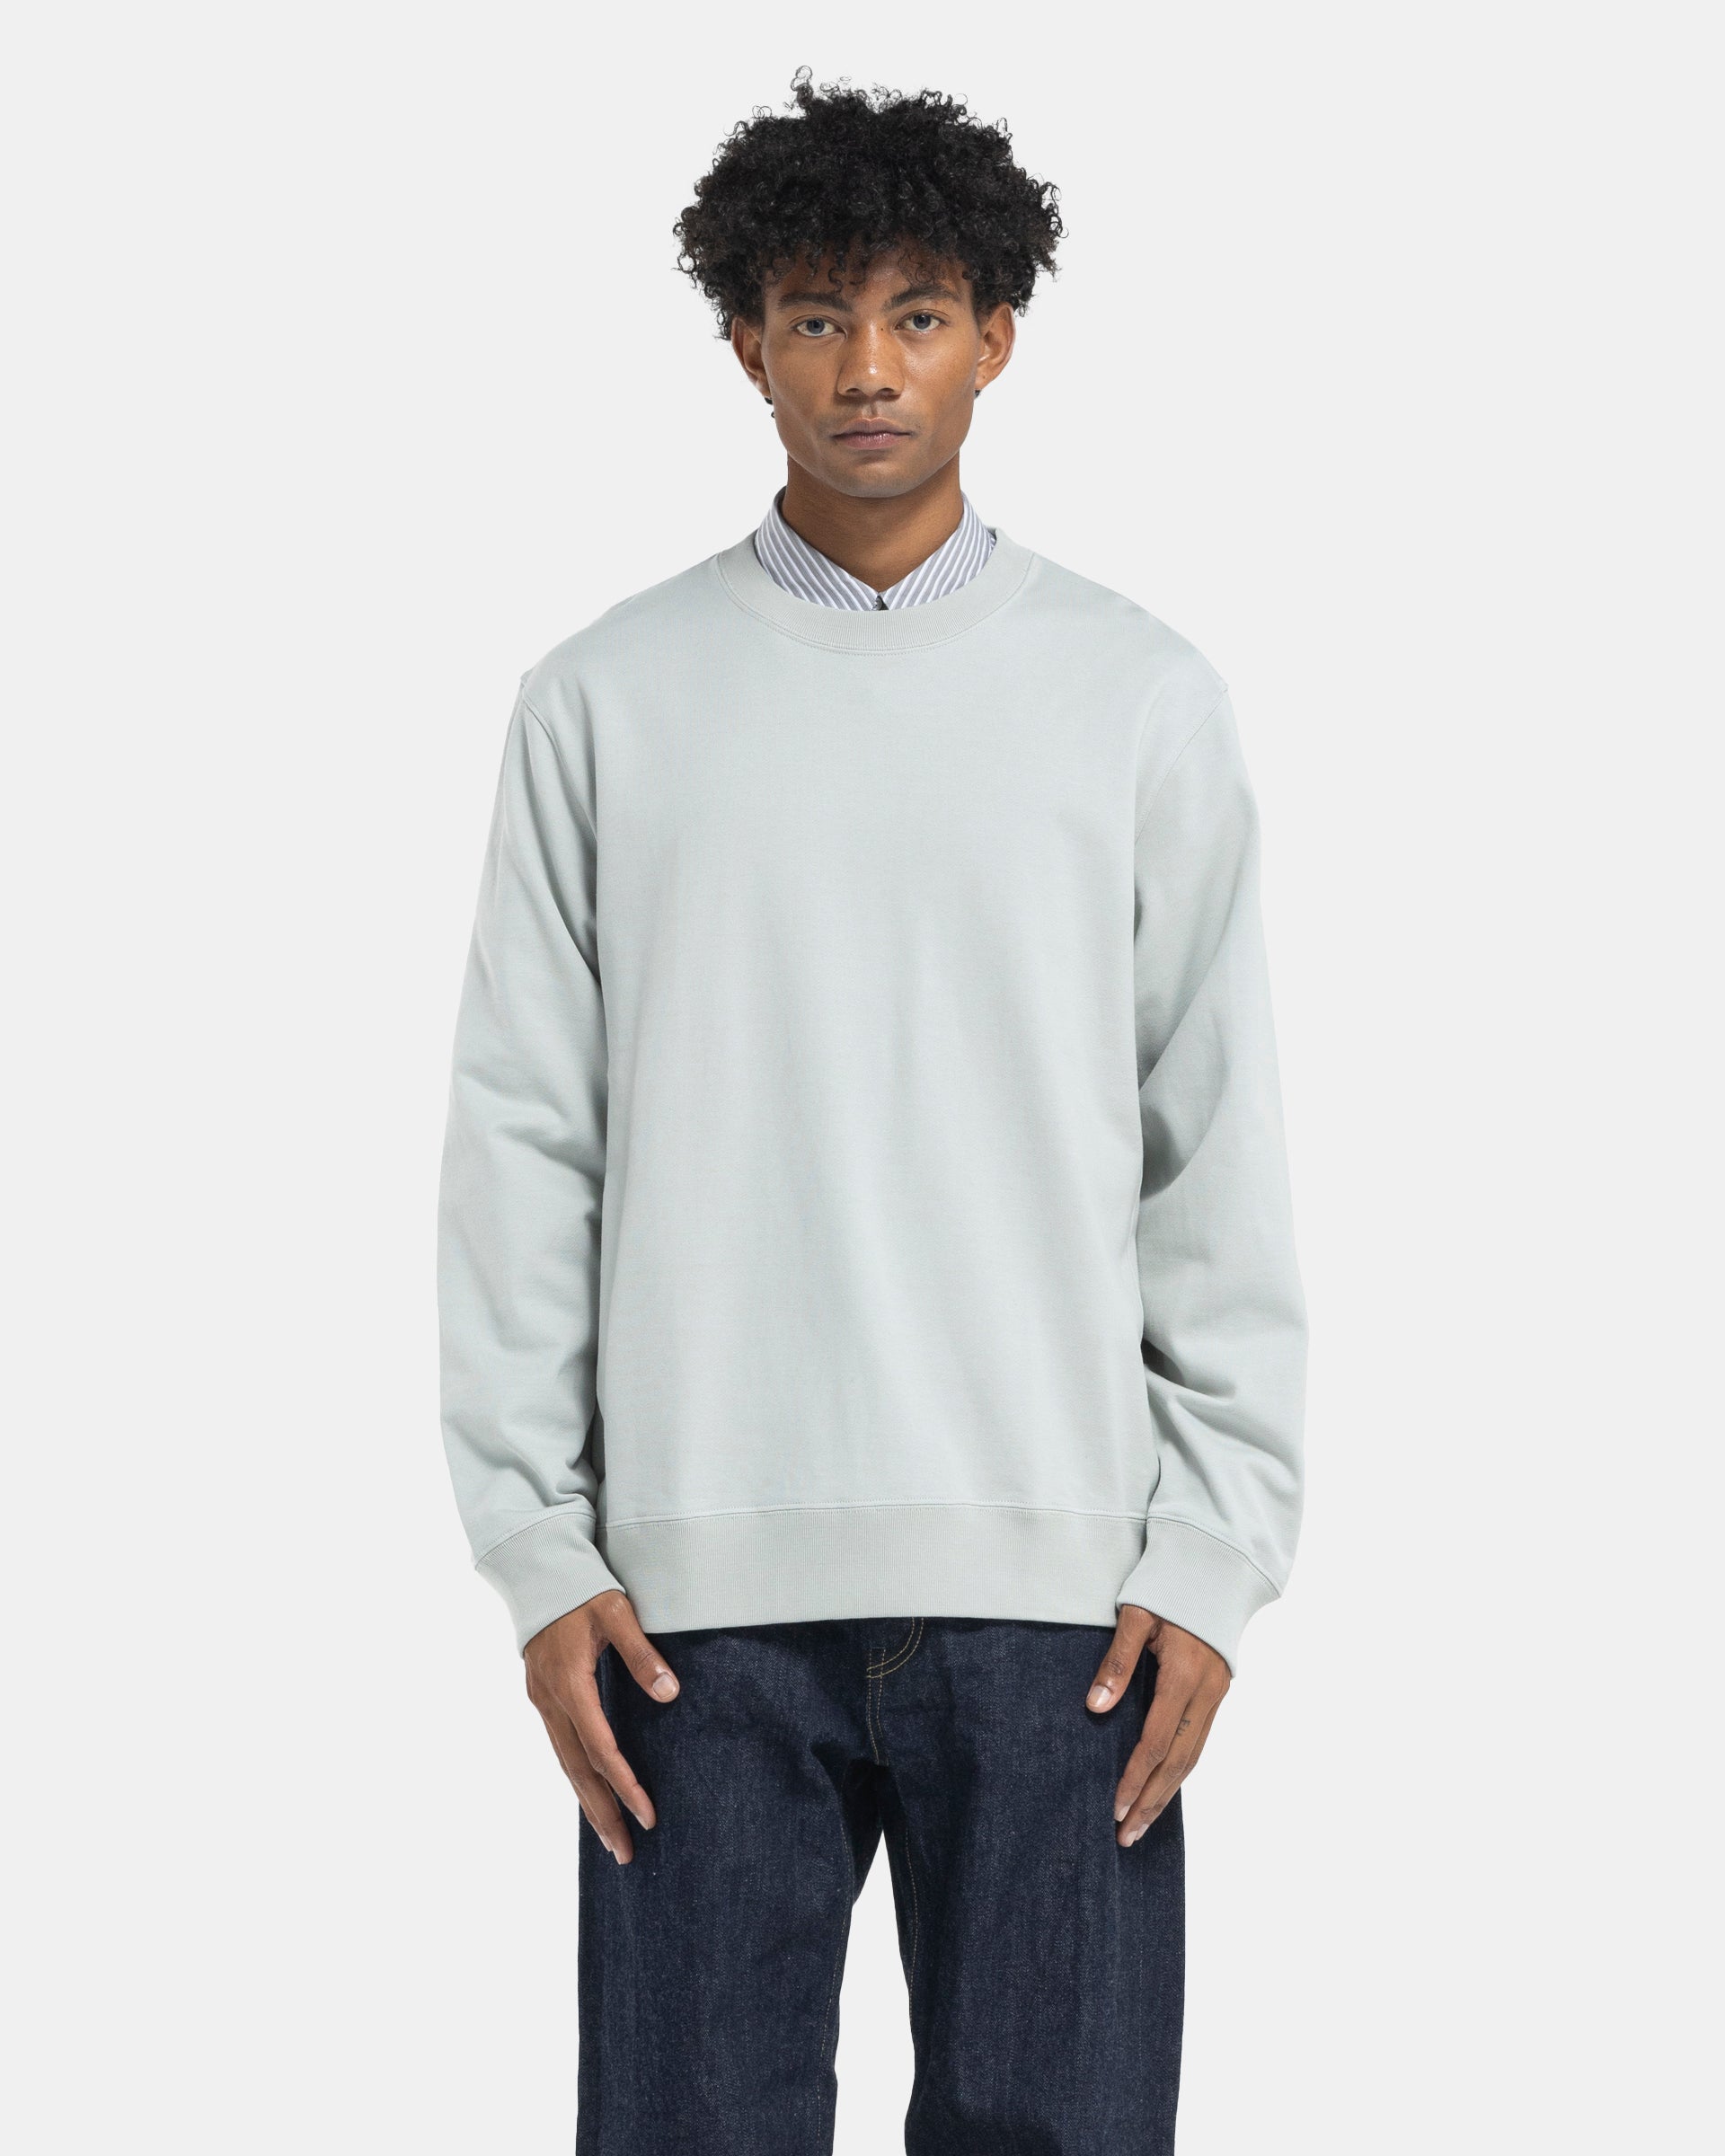 Pivot Sleeve Sweatshirt in Mint